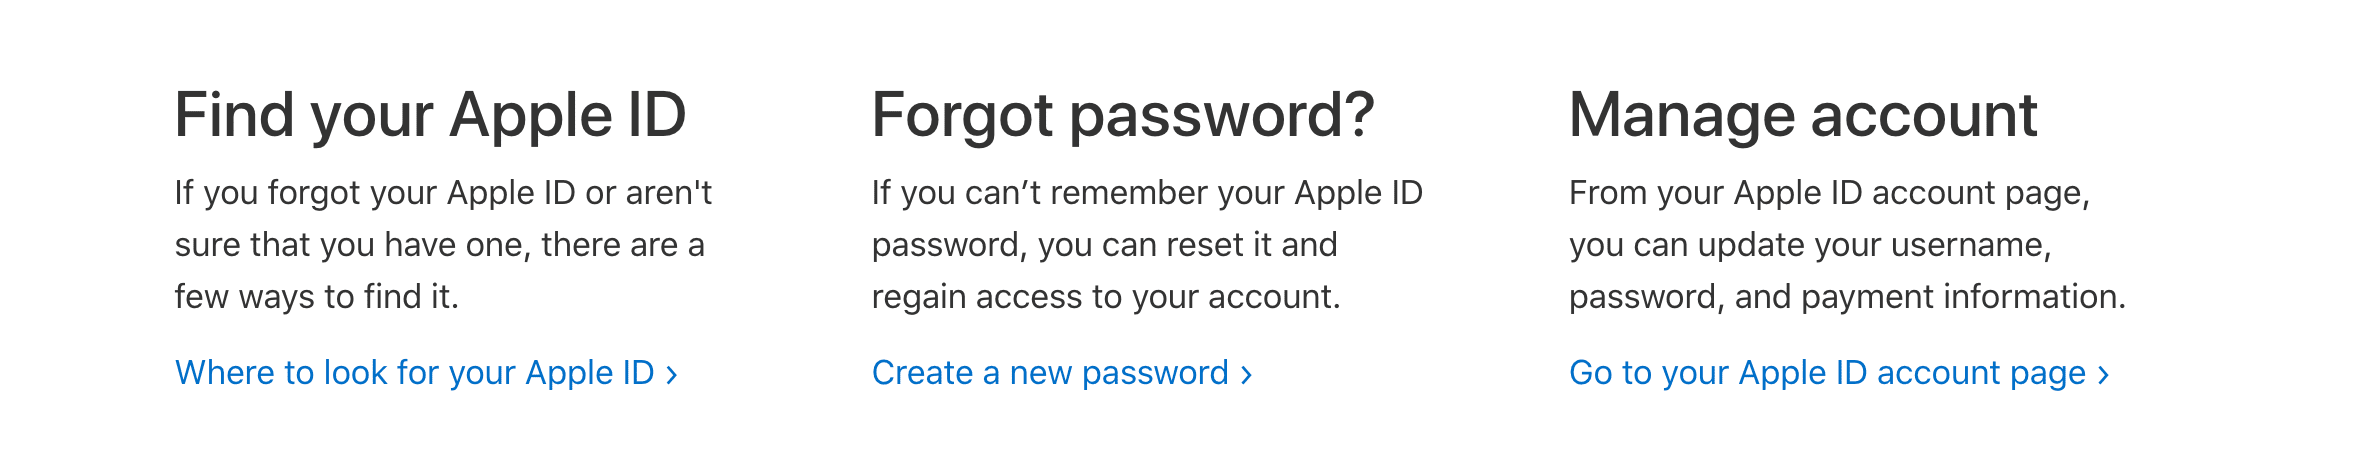 Снимок экрана, показывающий, как получить доступ к странице учетной записи Apple ID